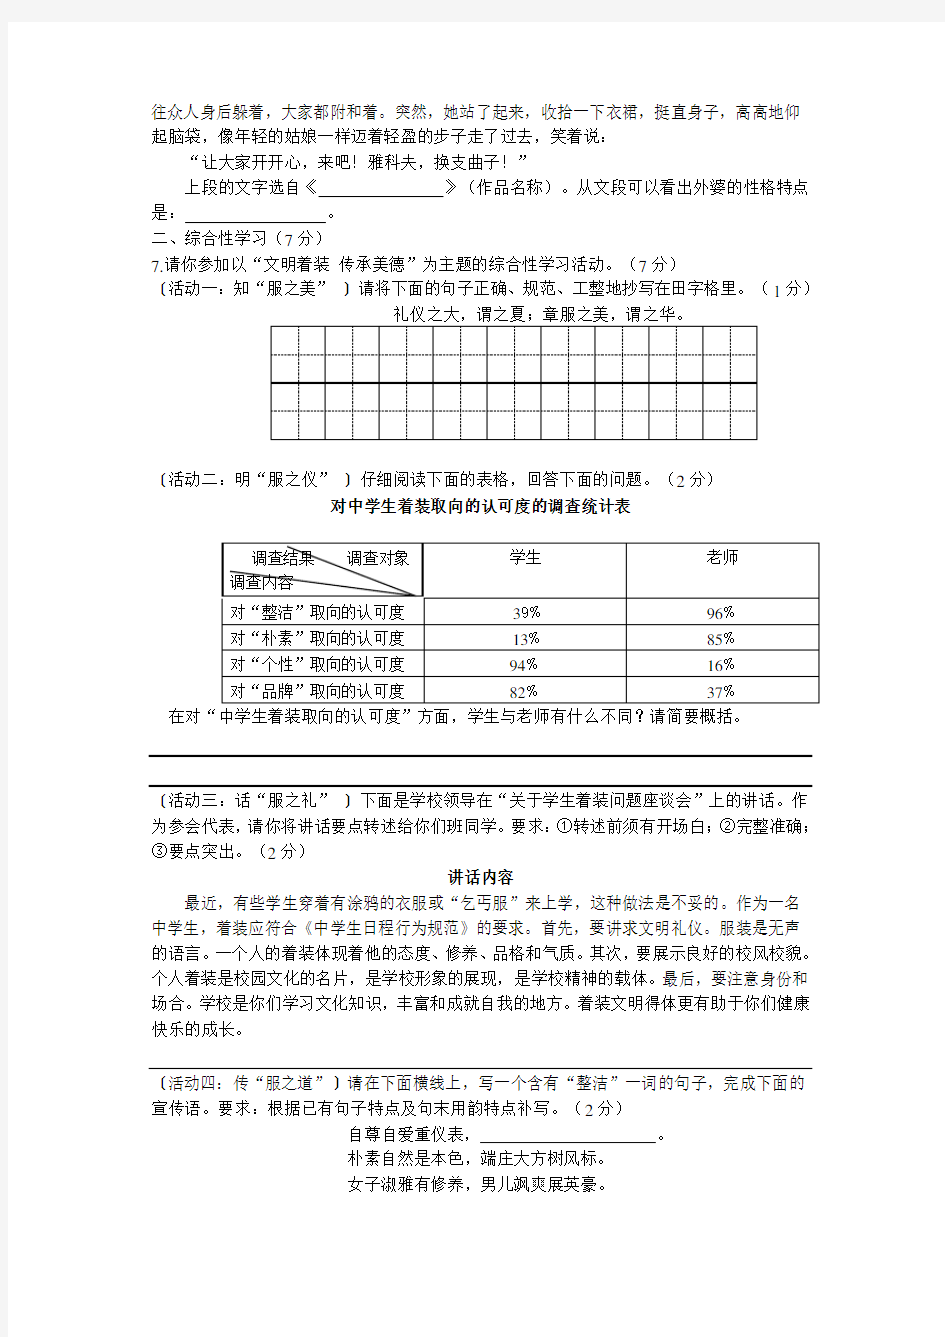 2015年陕西省中考语文试题及答案